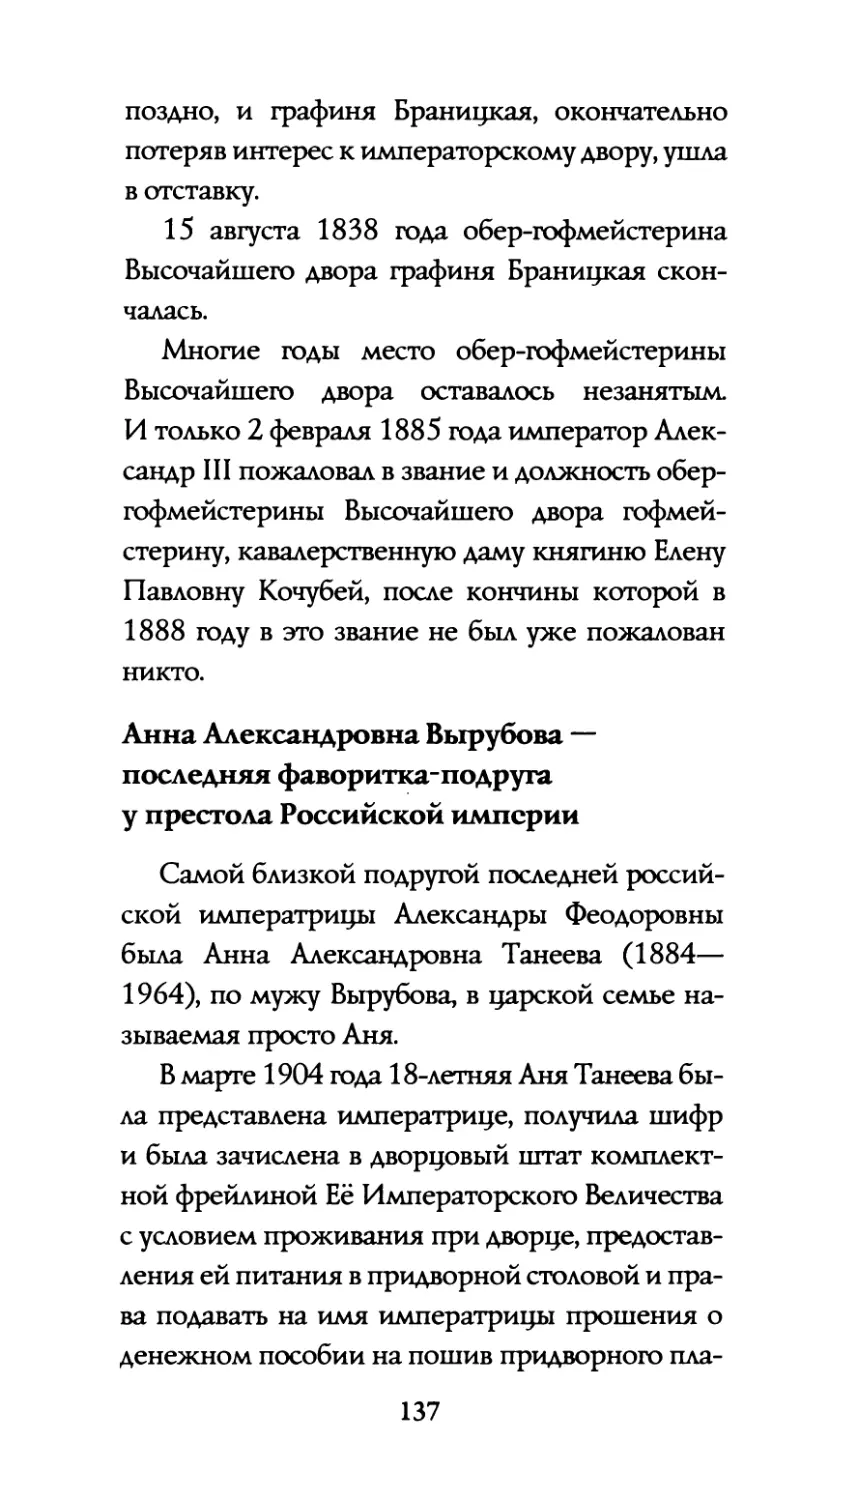 Анна  Александровна  Вырубова  — последняя  фаворитка-подруга у  престола  Российской  империи